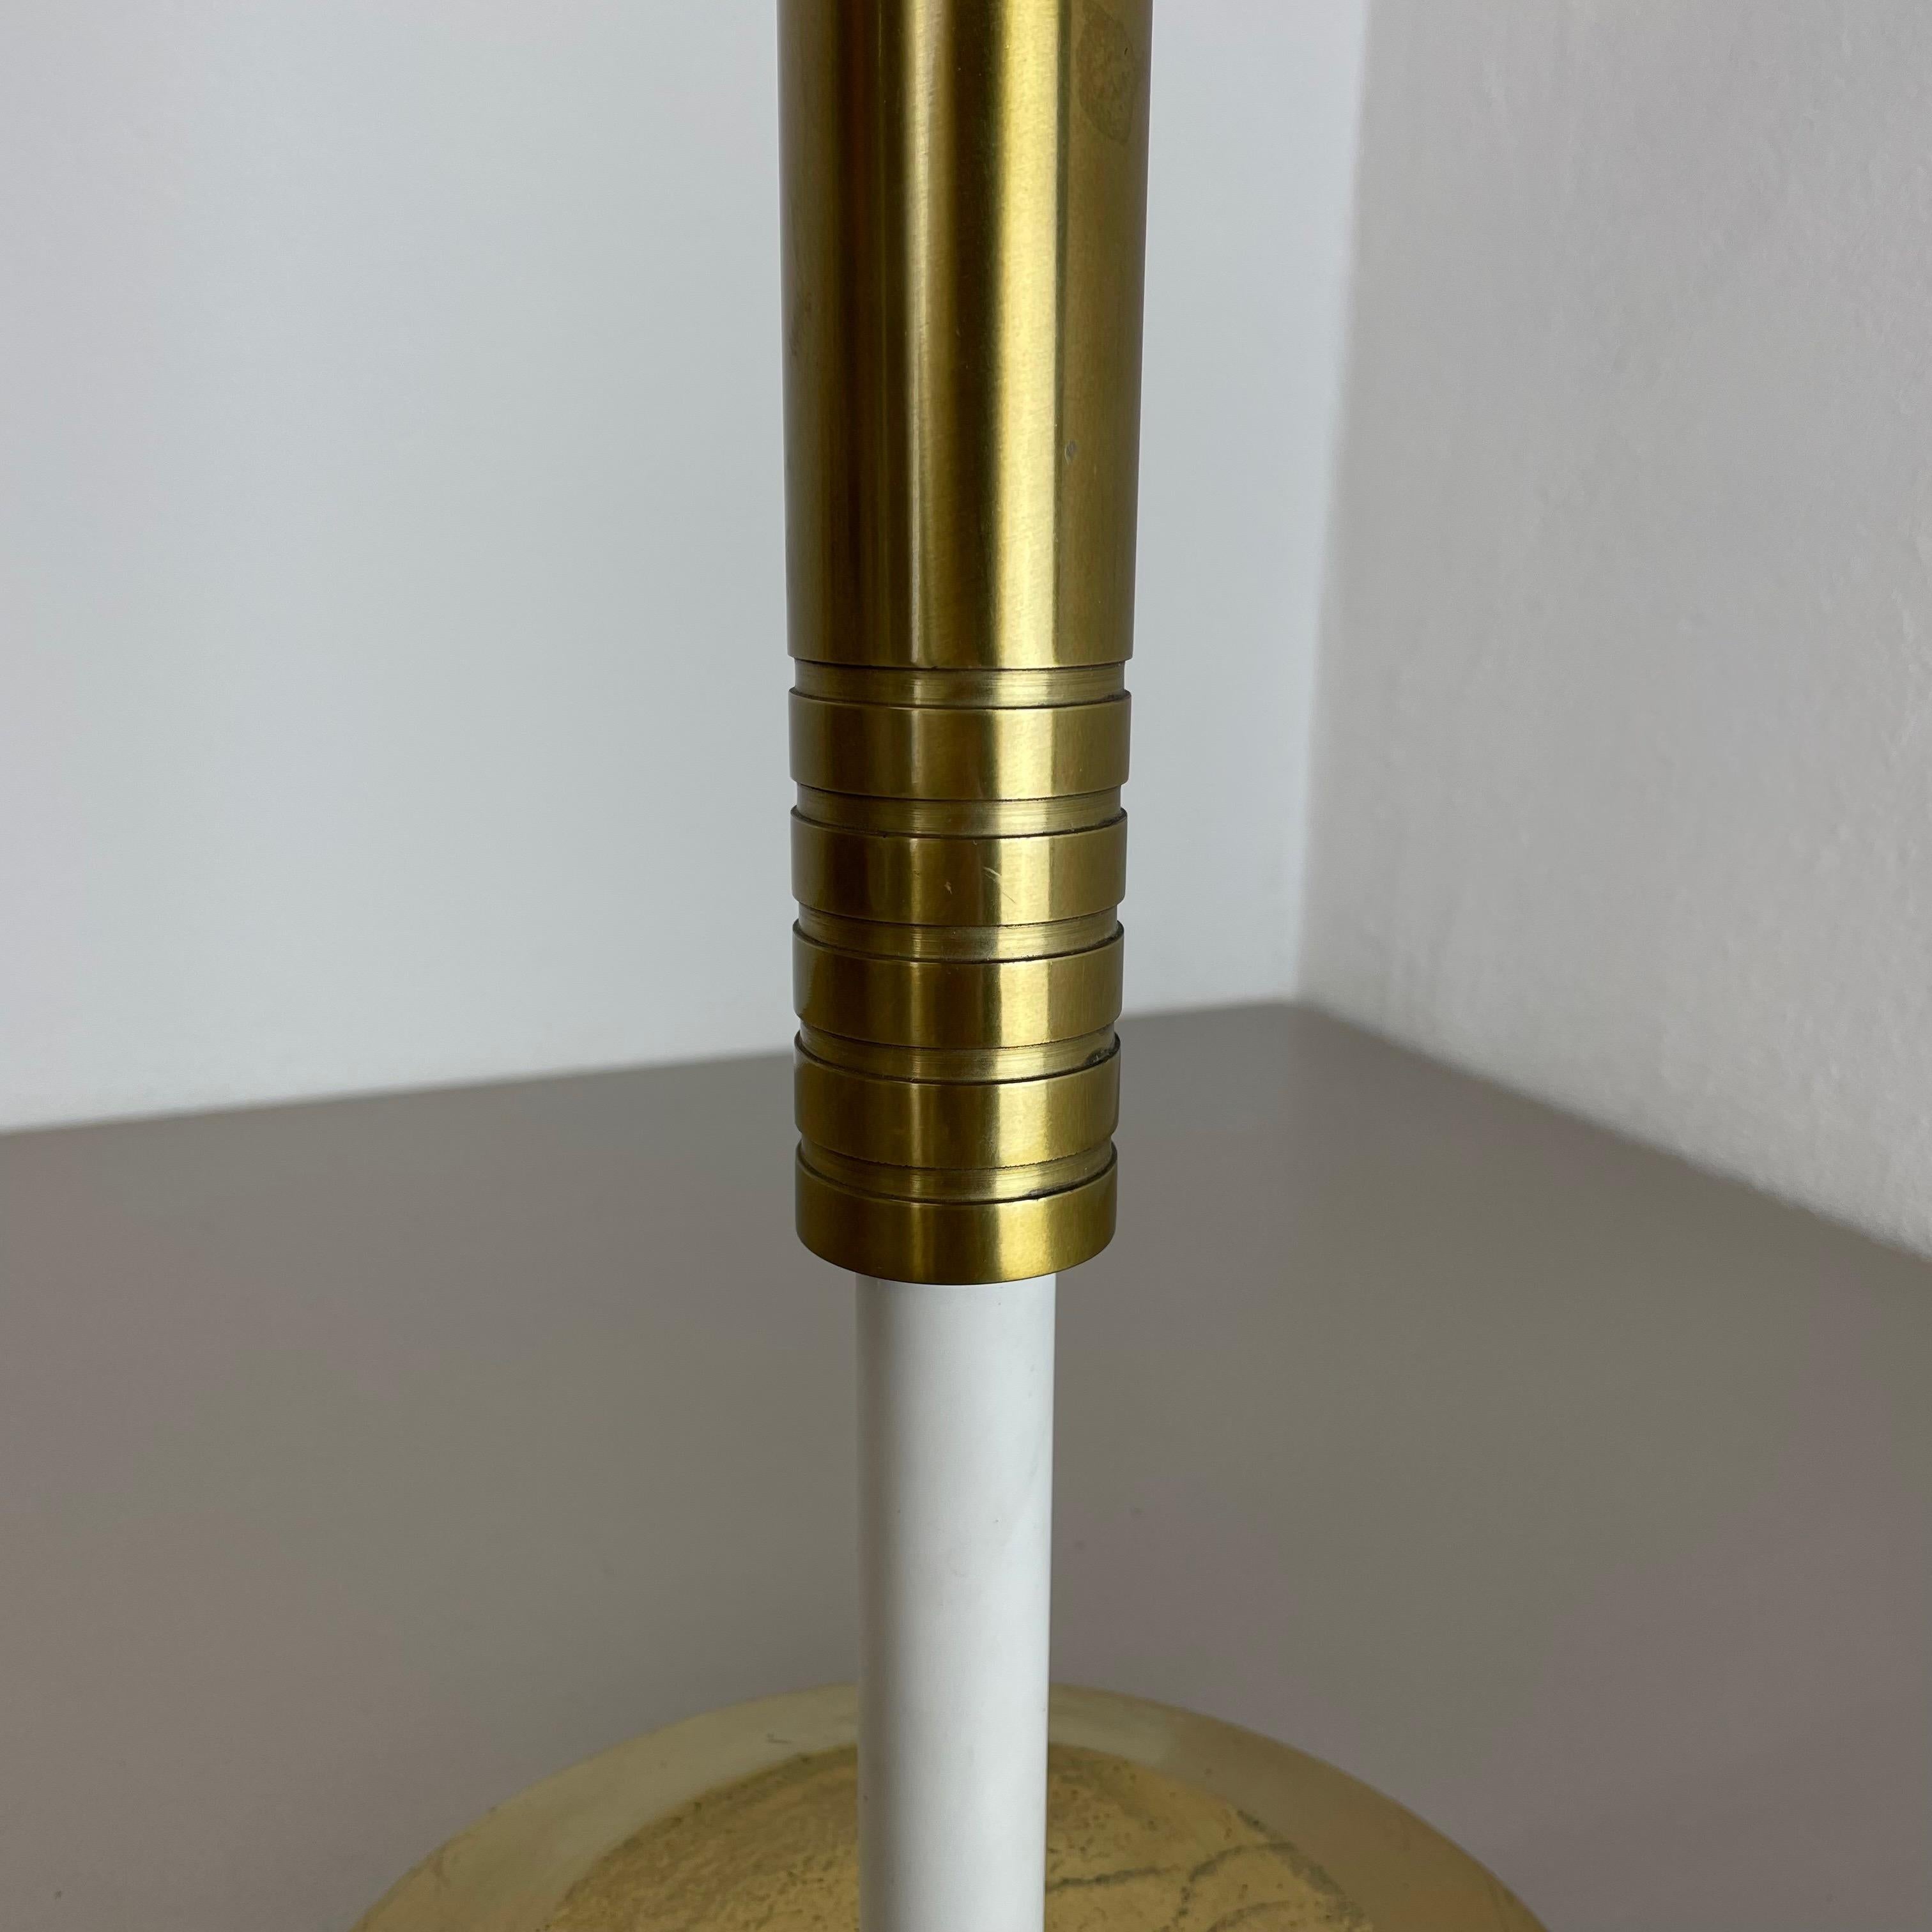 XL 3, 8kg Modernist Sculptural Brutalist Brass Floor Candleholder, Italy, 1950s For Sale 2